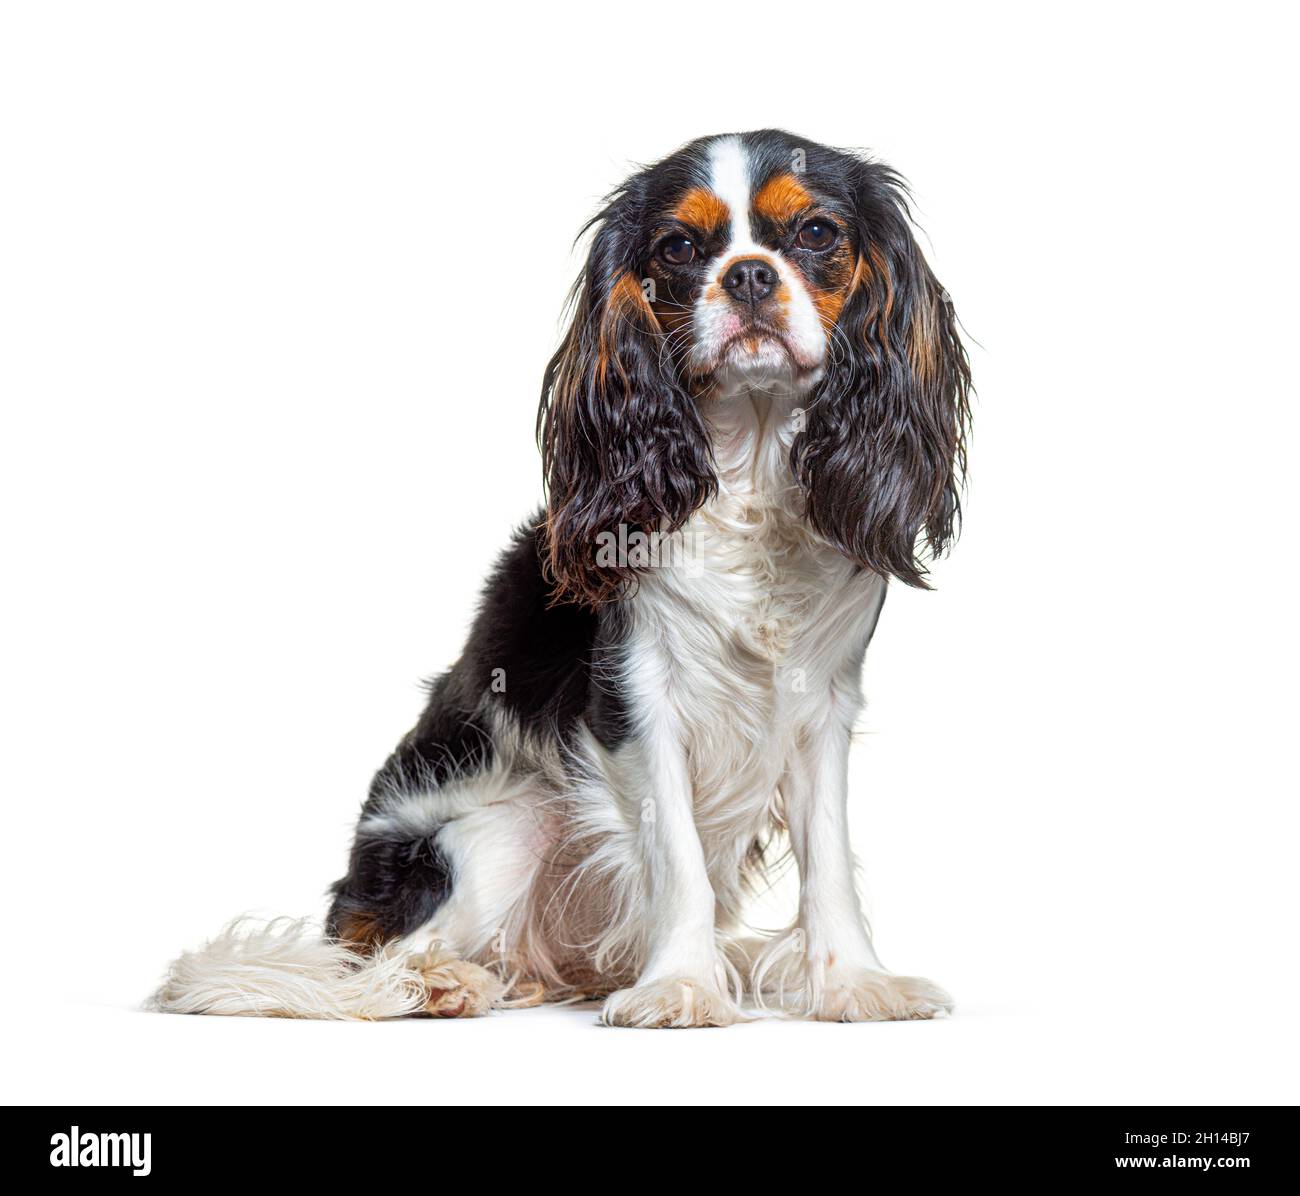 Dreifarbiger Cavalier King Charles Hund, sitzend und vor der Kamera, isoliert Stockfoto